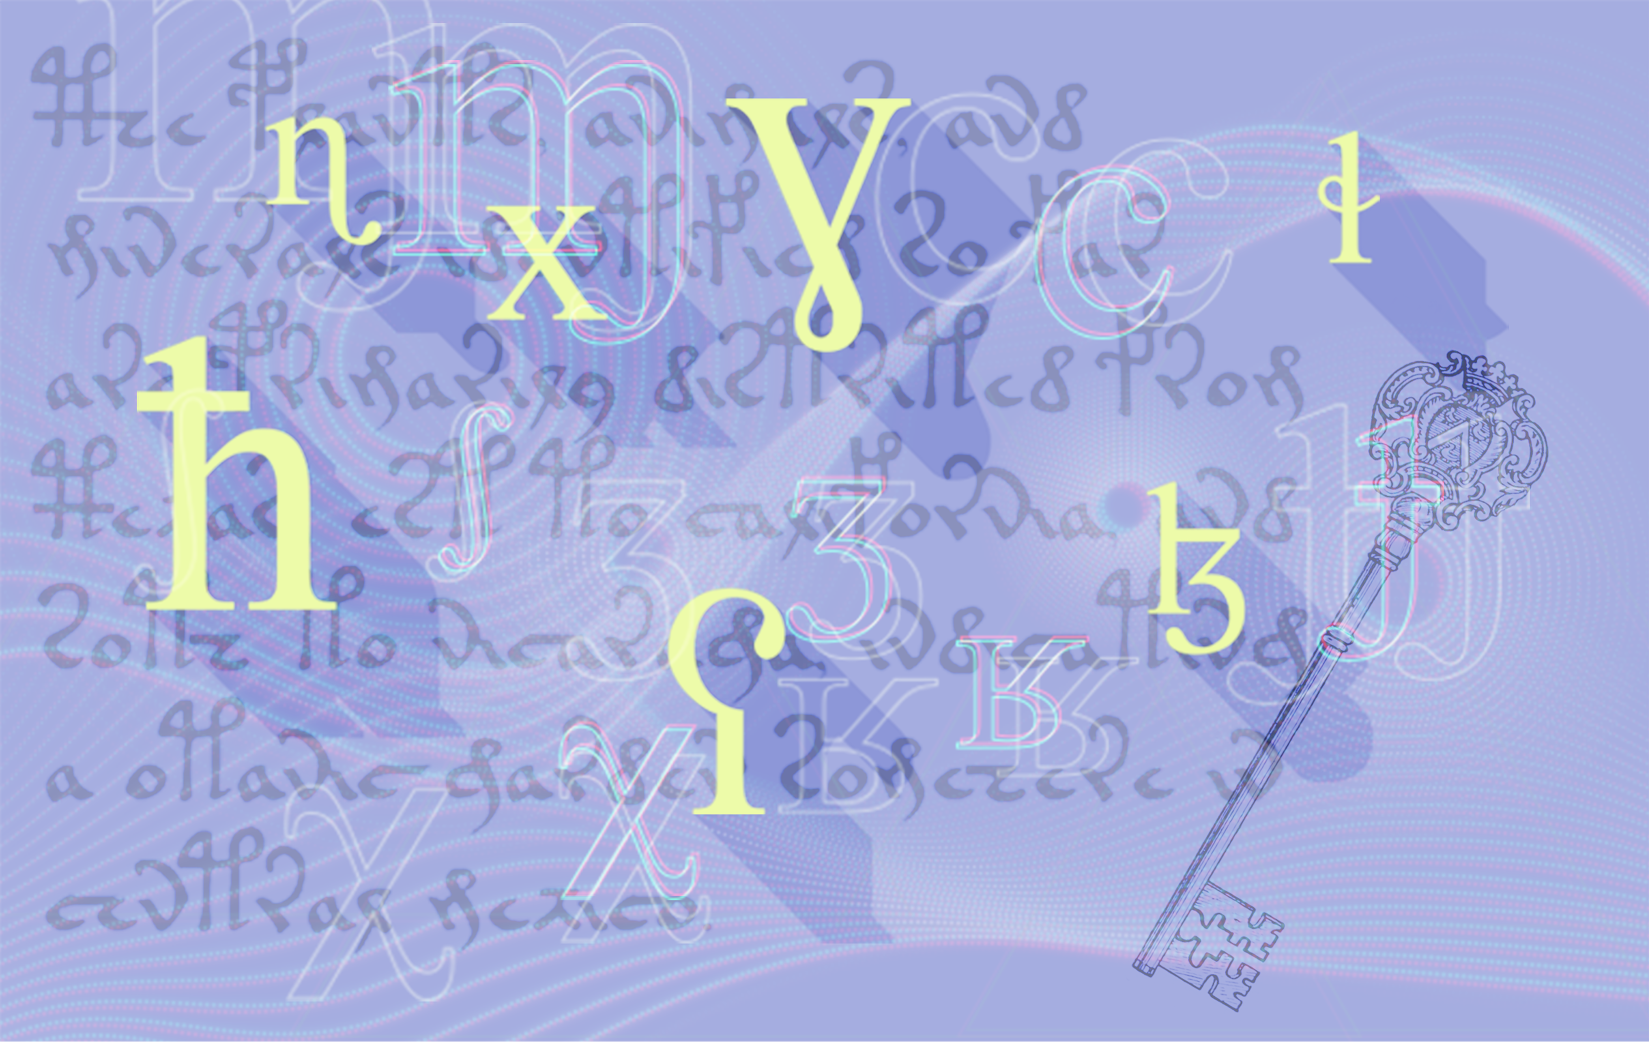 Imagem com diversos símbolos fonéticos e uma chave de móvel antigo.